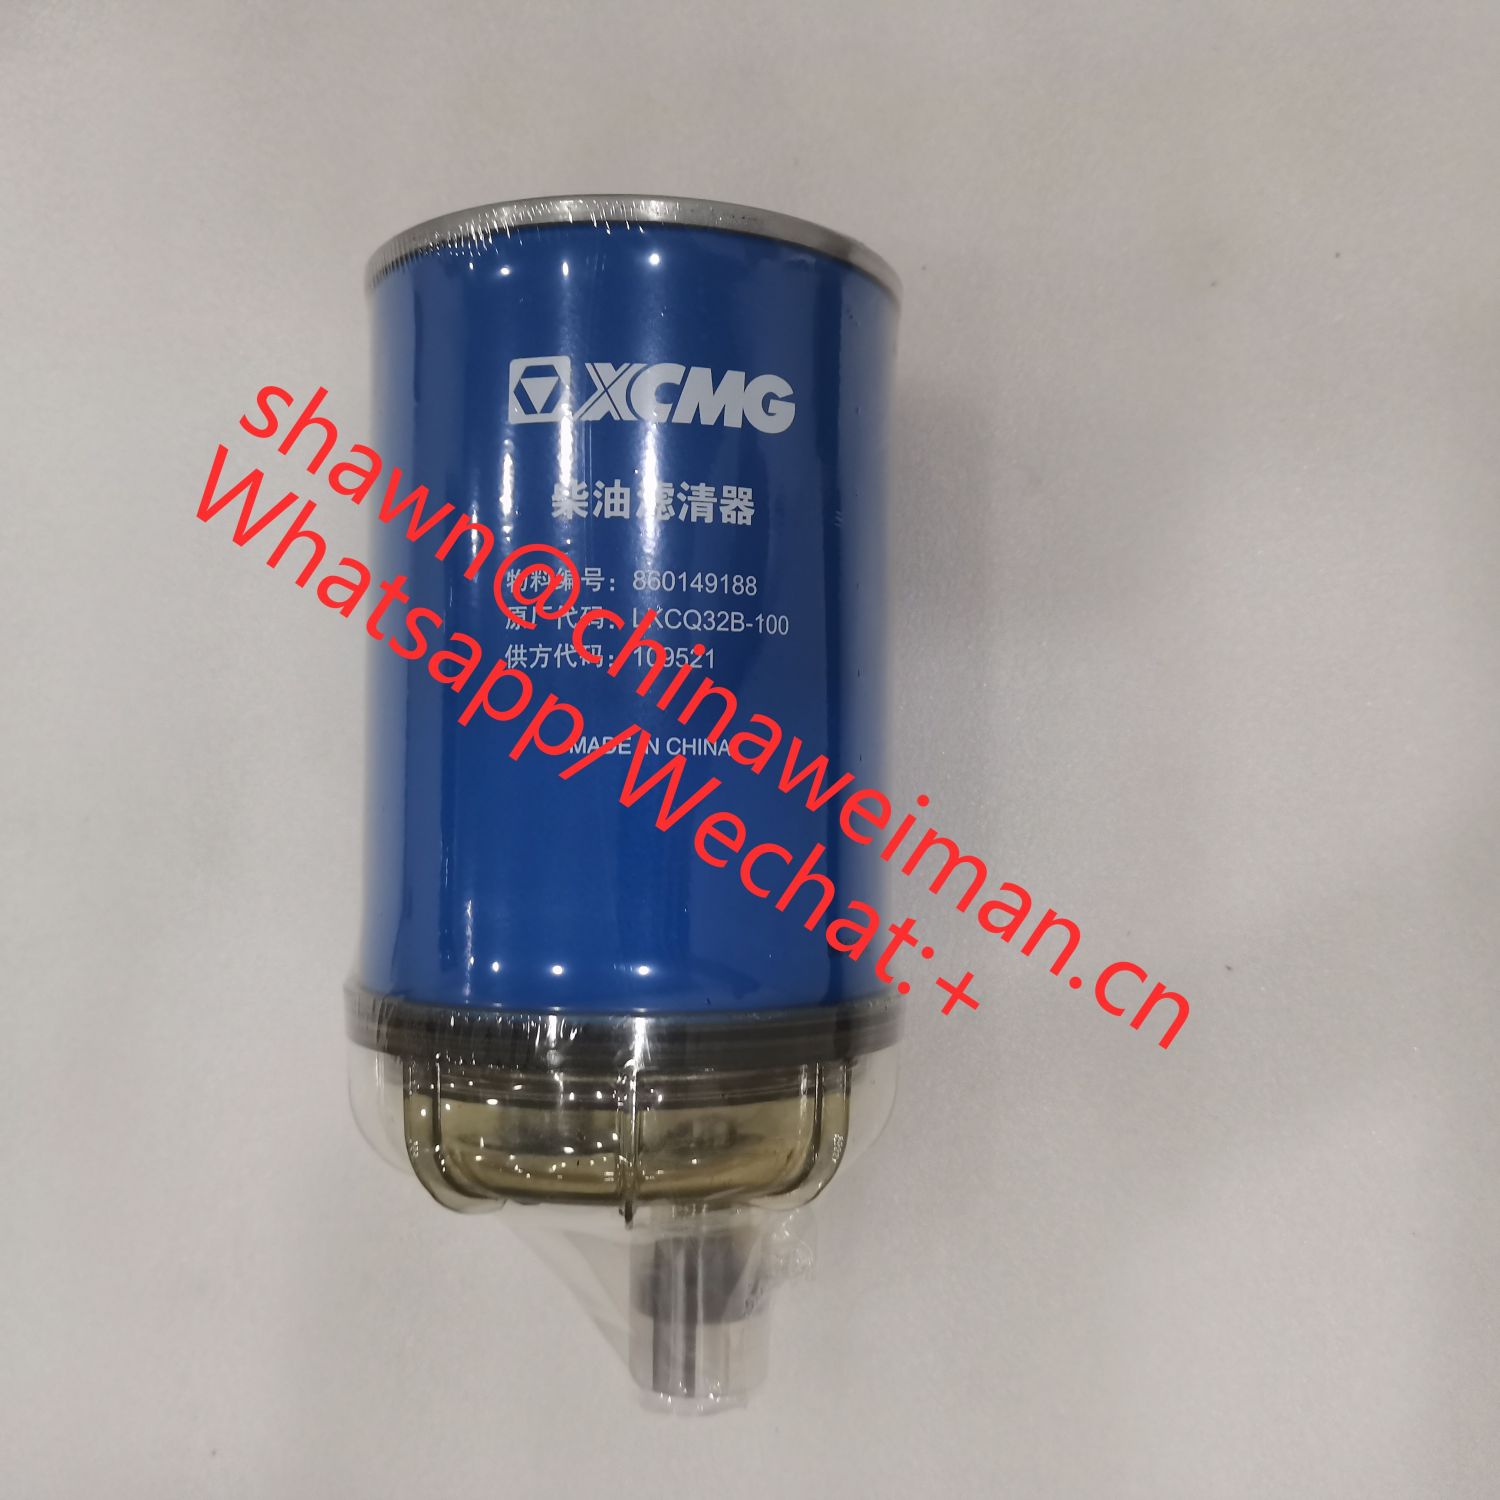 XCMG Diesel filter 860149188